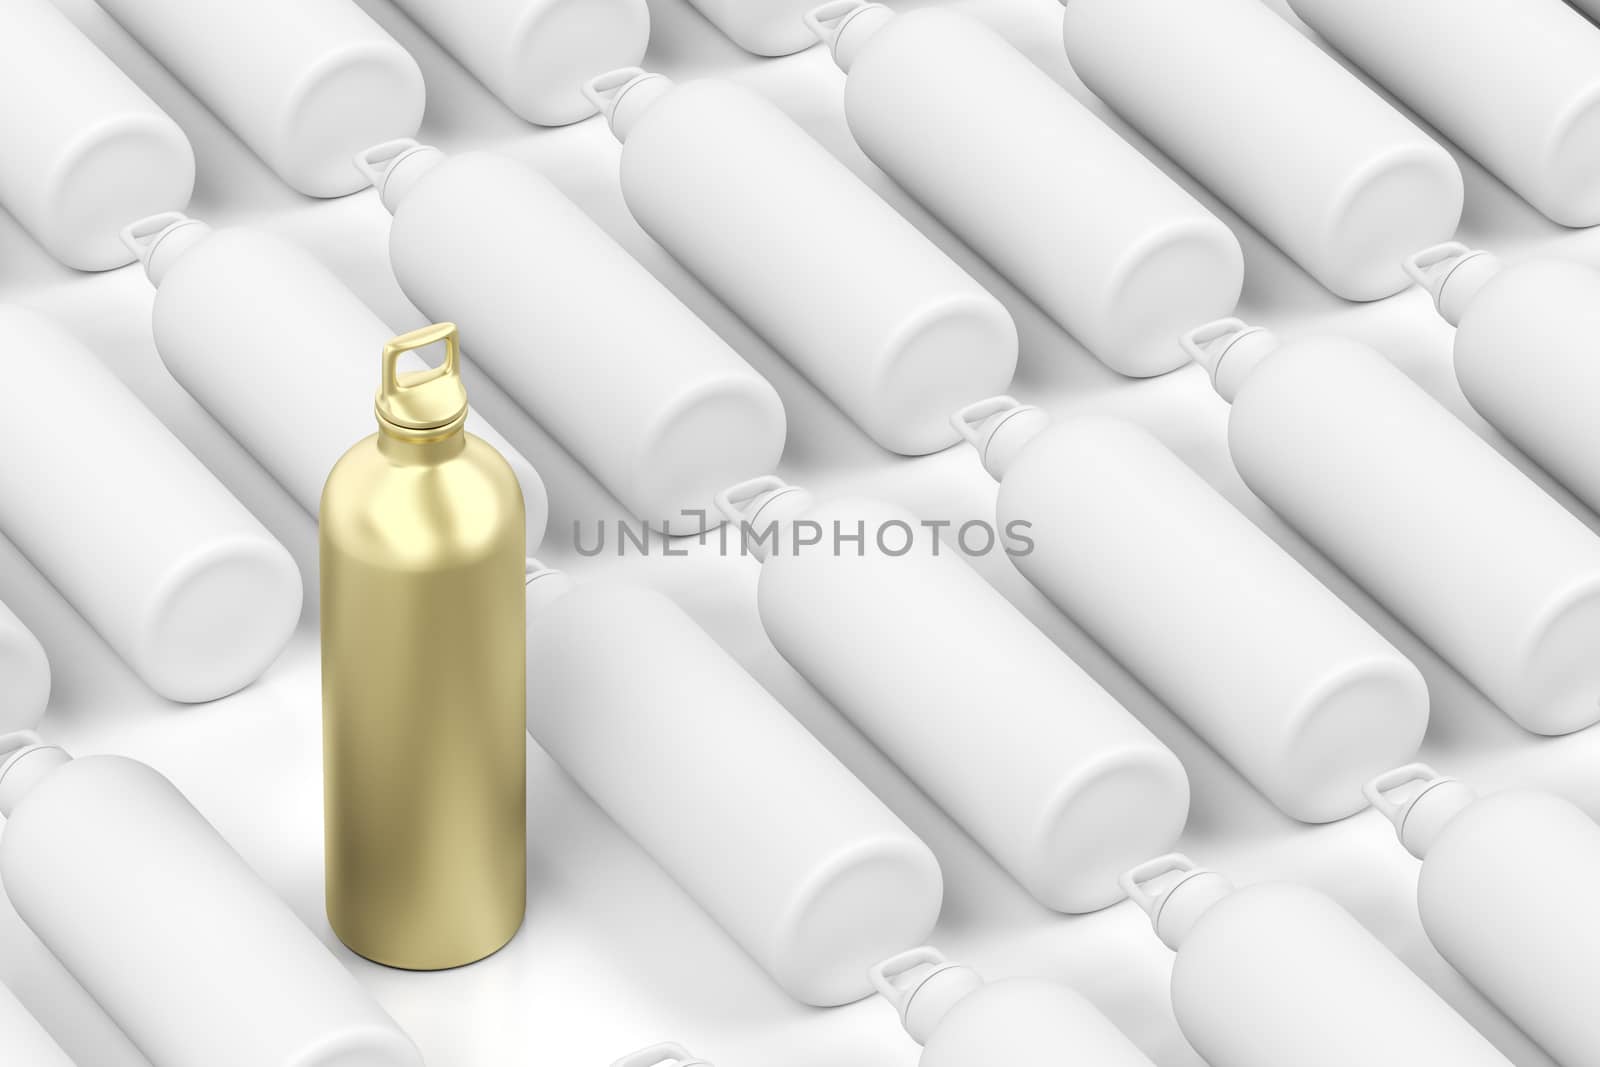 Golden bottle among other blank white bottles, concept image